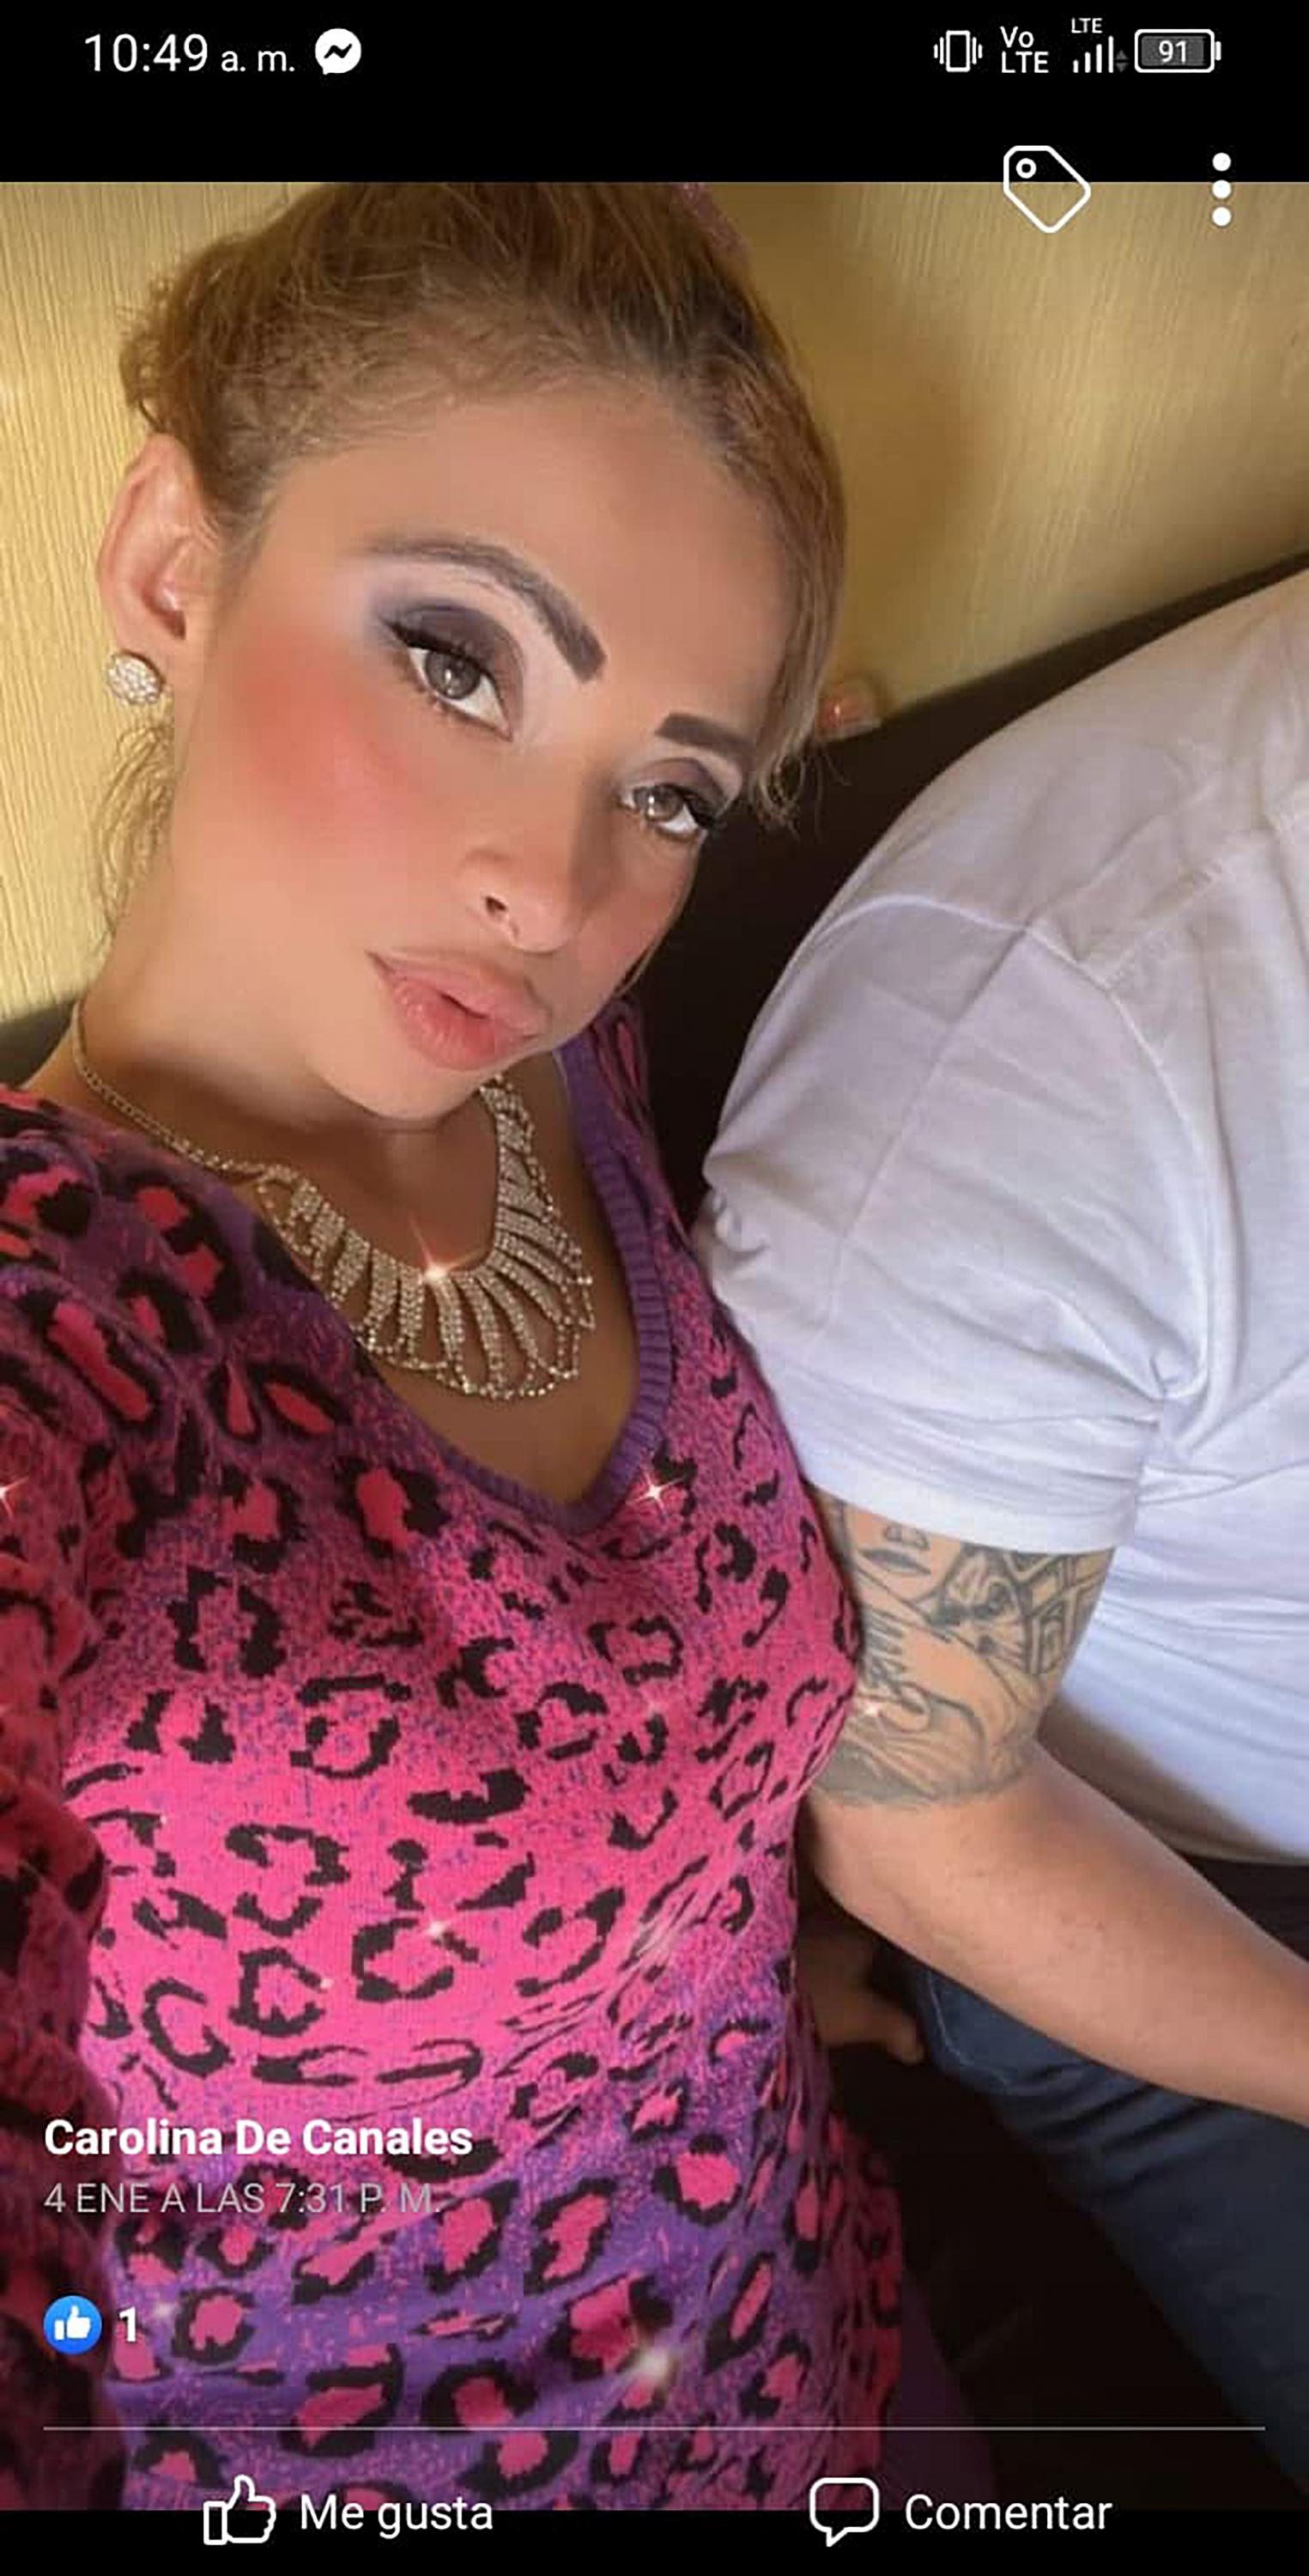 En esta imagen subida por Yesi Chávez a su red social puede identificarse uno de los tatuajes que Crook lució en algunas fotos que le tomaron durante la tregua: la silueta de una mujer de labios oscuros en su brazo. 